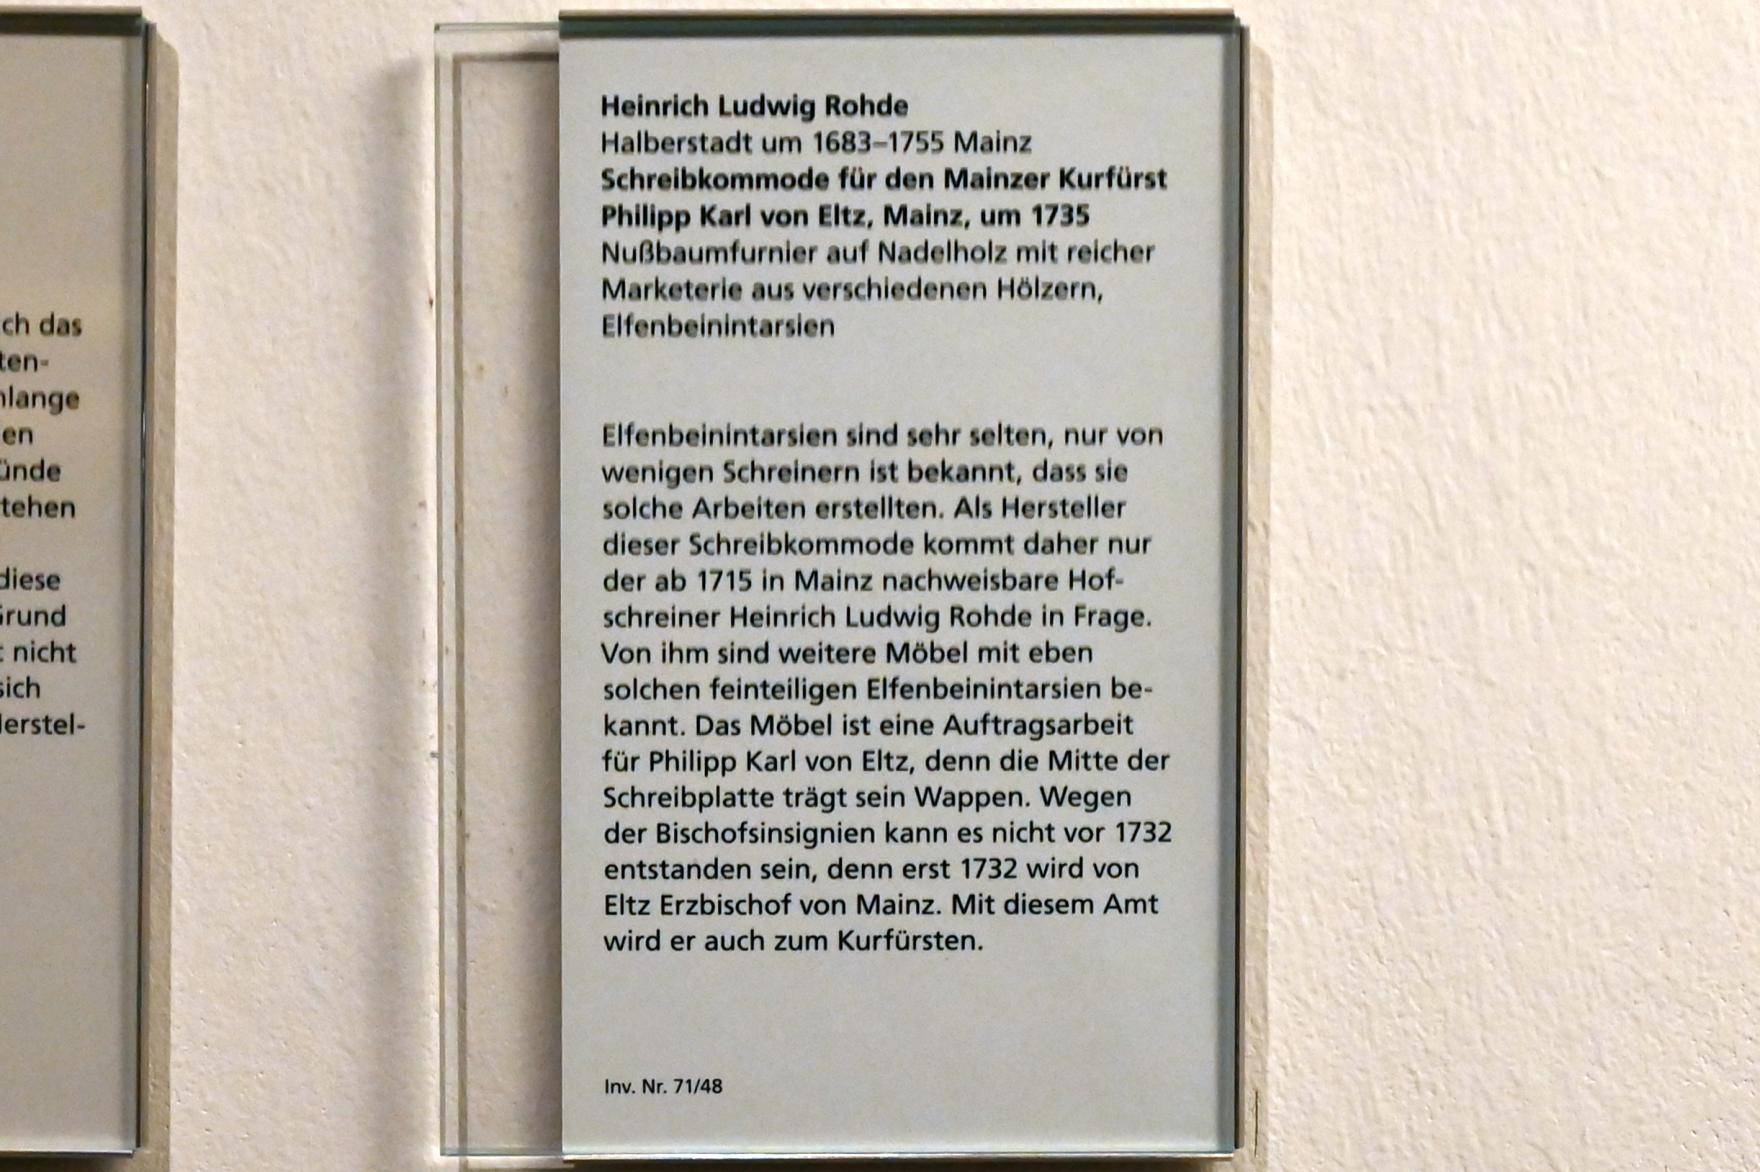 Heinrich Ludwig Rohde (1735), Schreibkommode für den Mainzer Kurfürst Philipp Karl von Eltz, Mainz, Landesmuseum, Mainzer Barock, um 1735, Bild 3/3